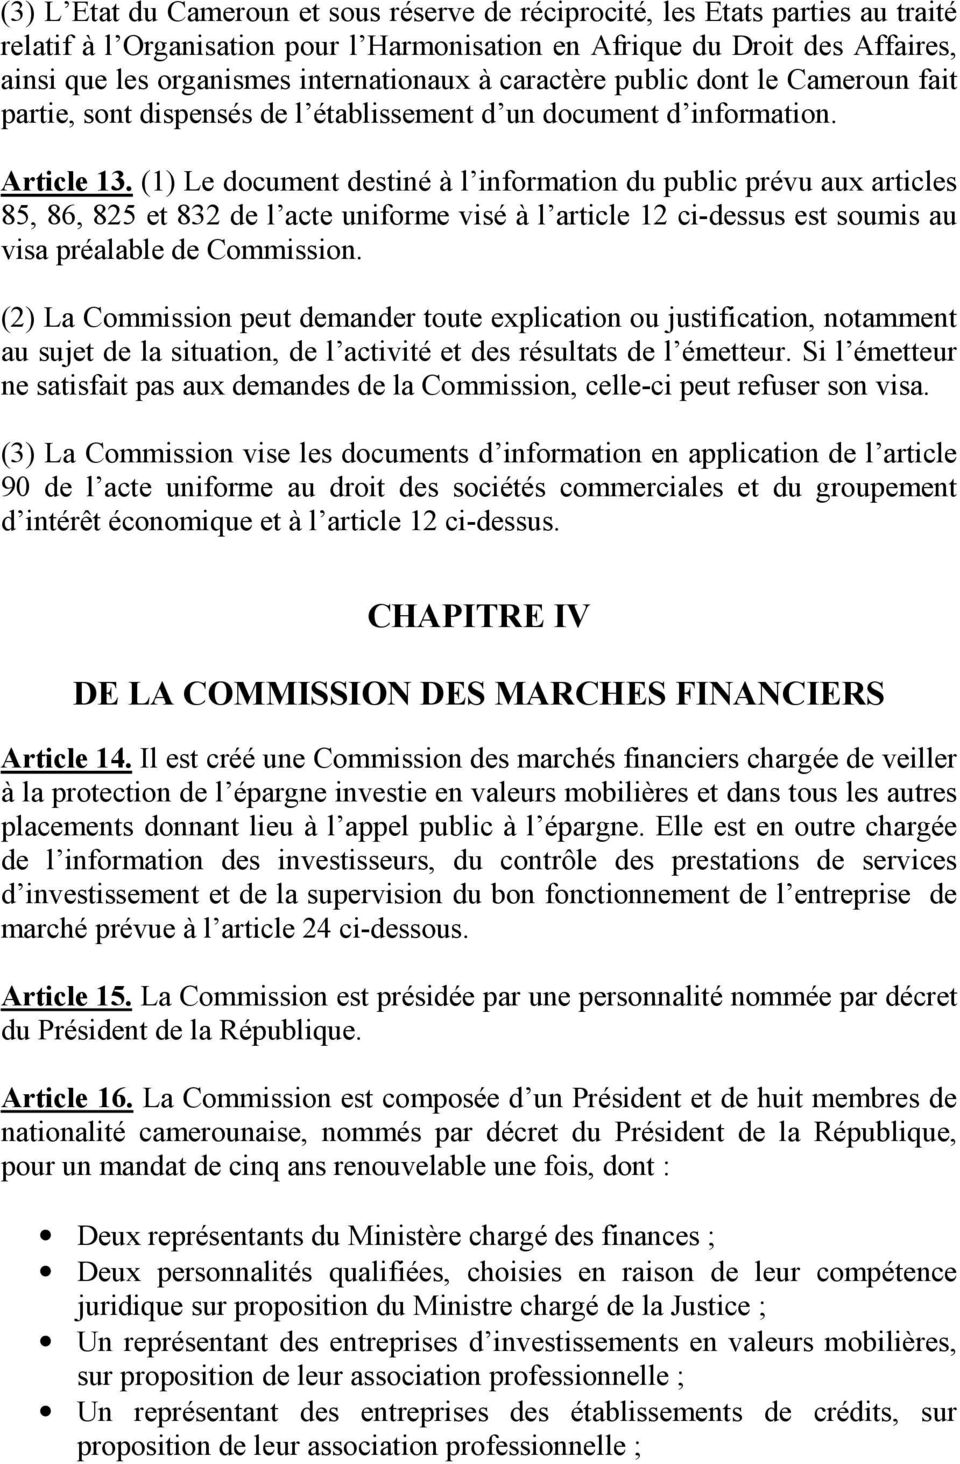 (1) Le document destiné à l information du public prévu aux articles 85, 86, 825 et 832 de l acte uniforme visé à l article 12 ci-dessus est soumis au visa préalable de Commission.